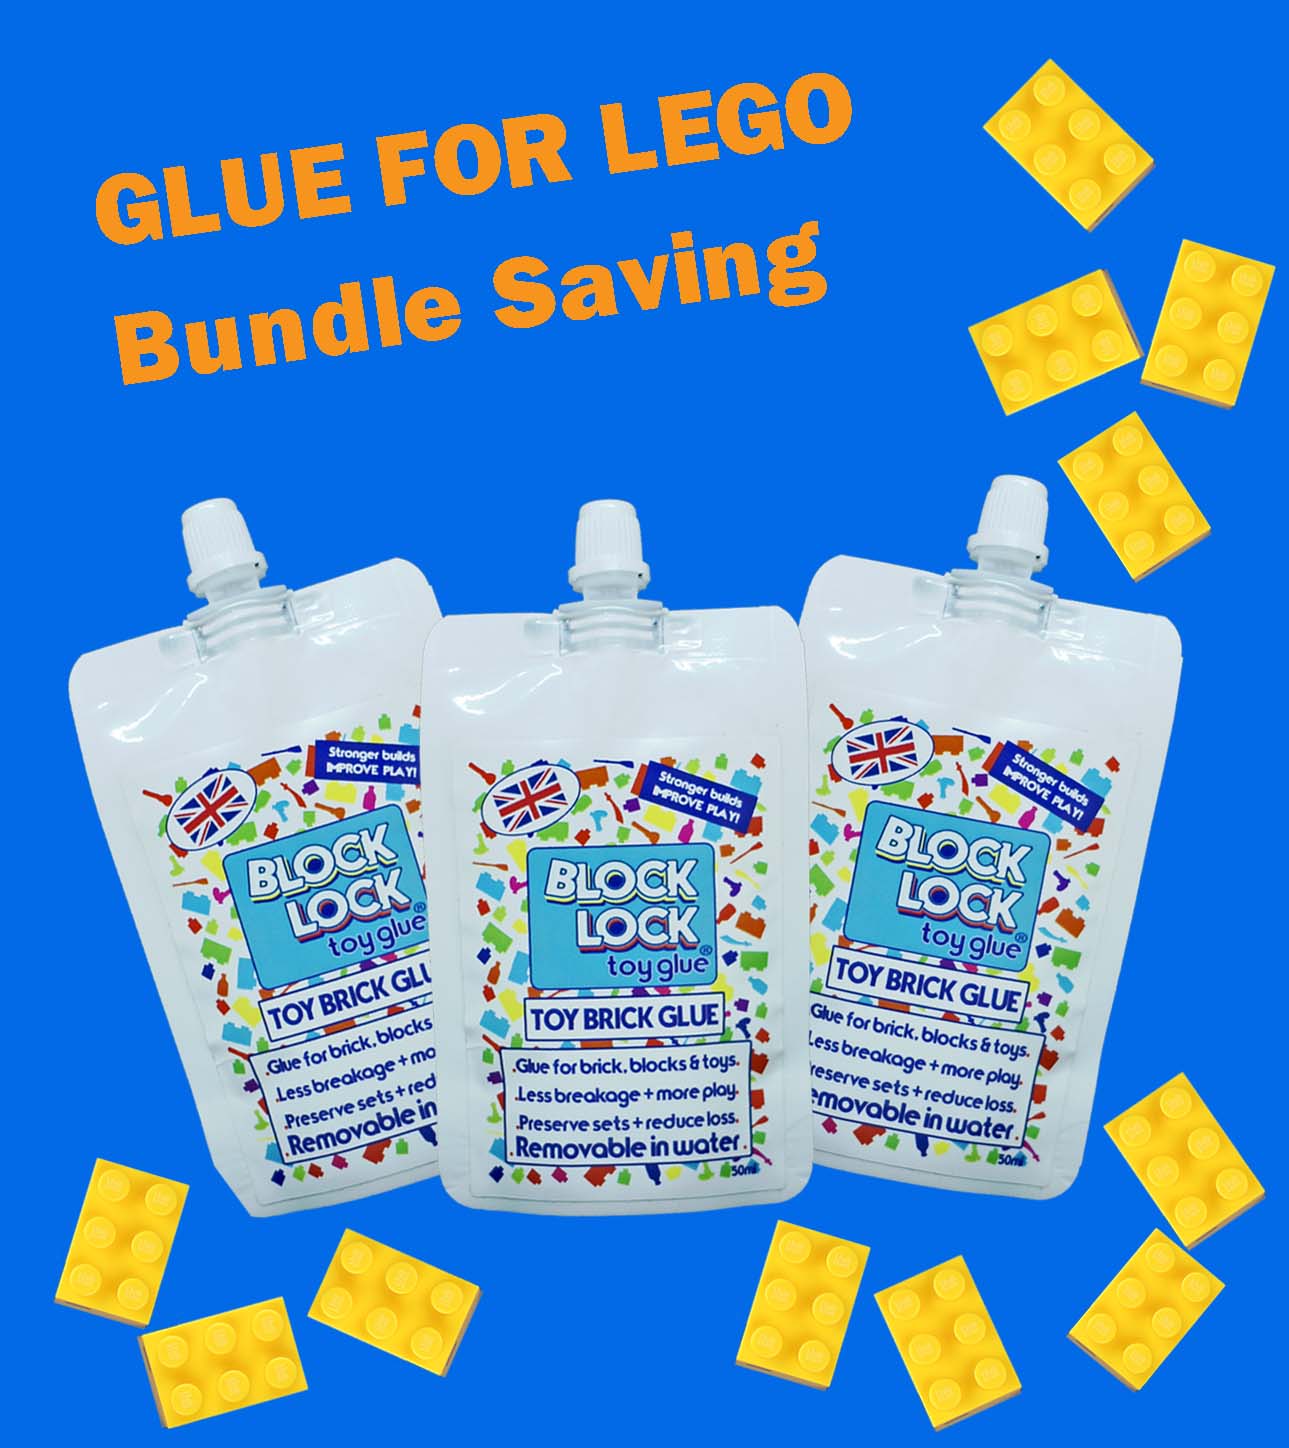 Block Lock Toy Glue for Lego Lot de 3 sachets de colle pour jouets